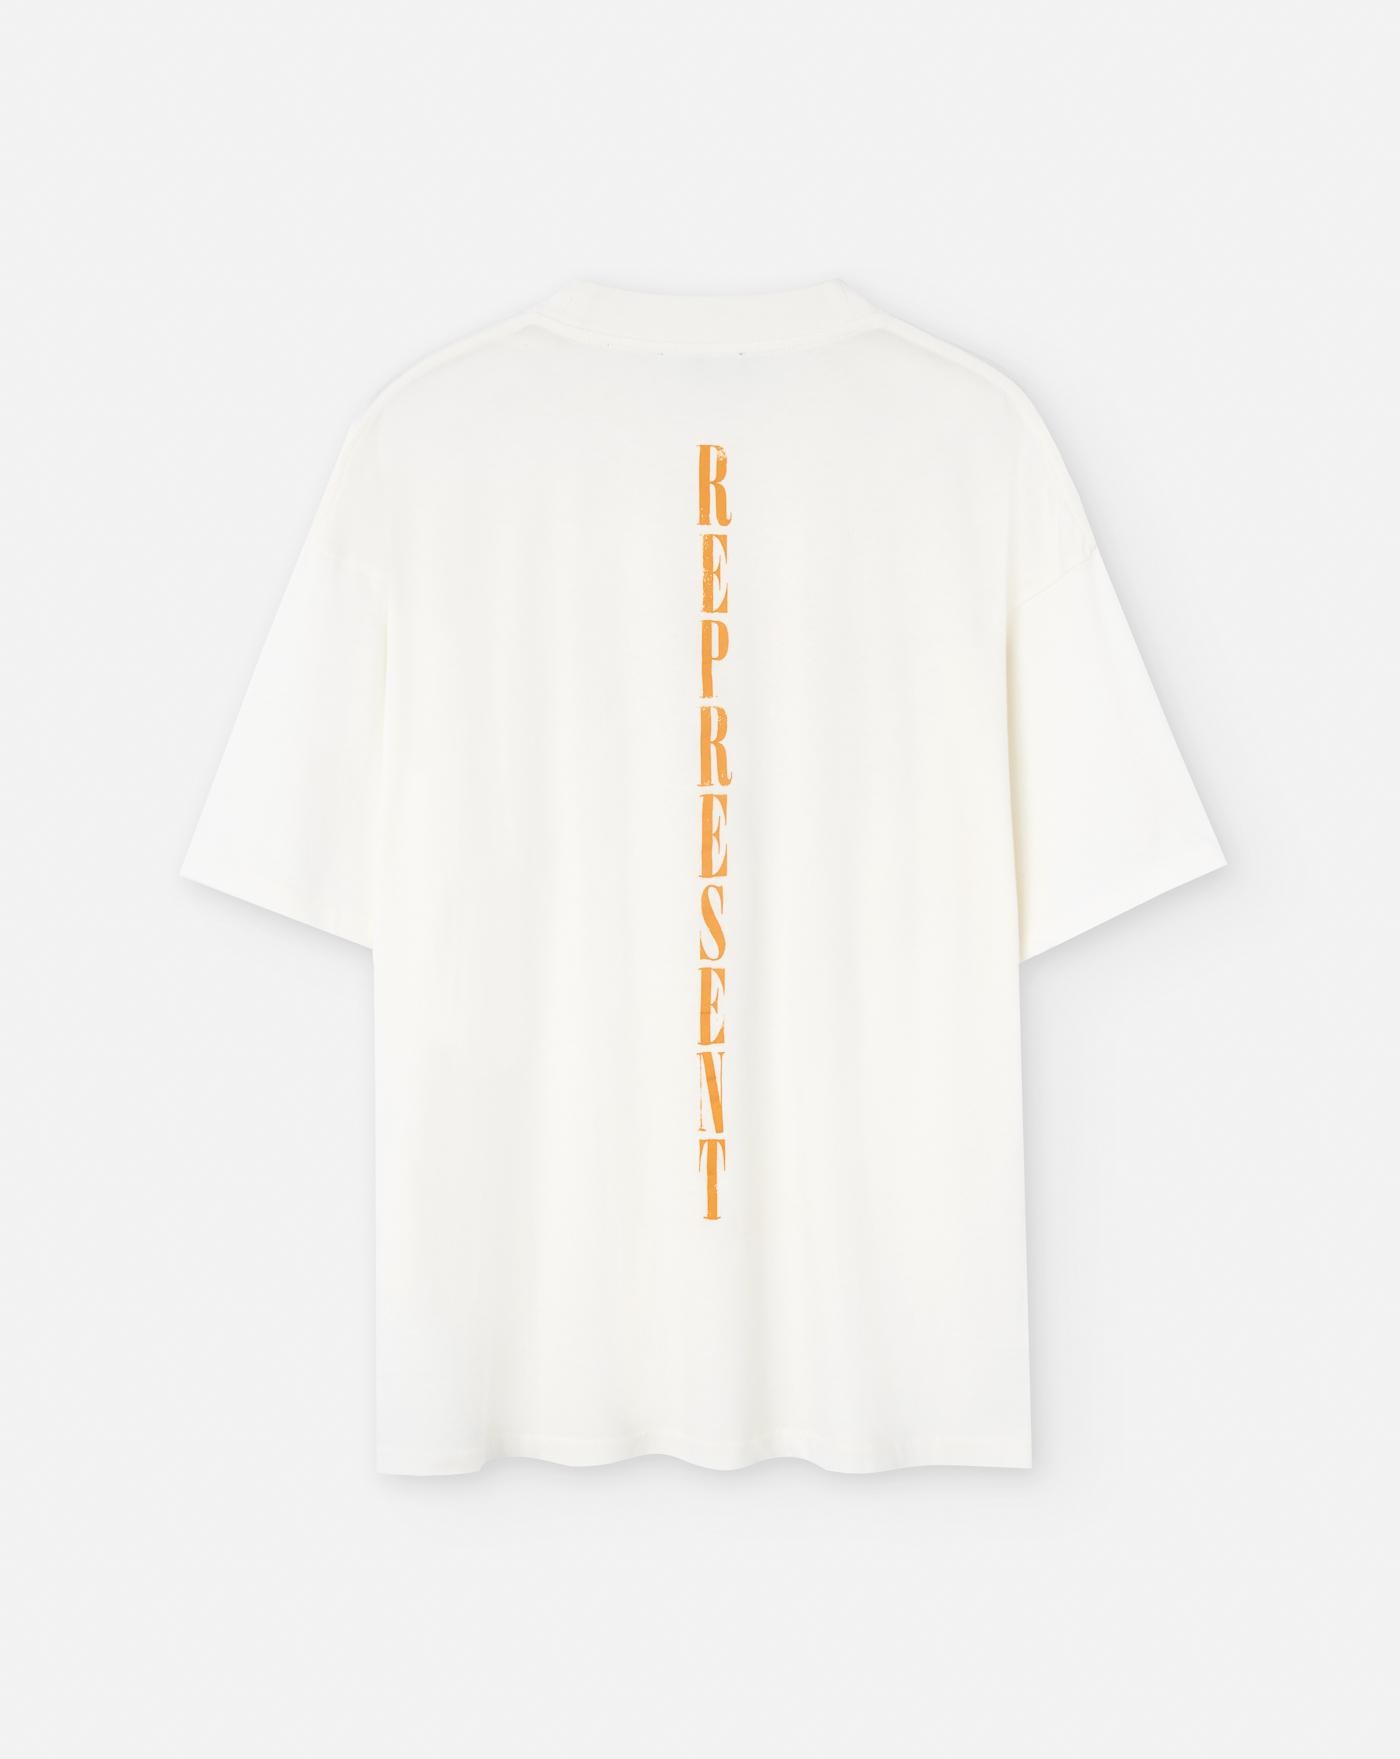 Camiseta Represent Reborn 1